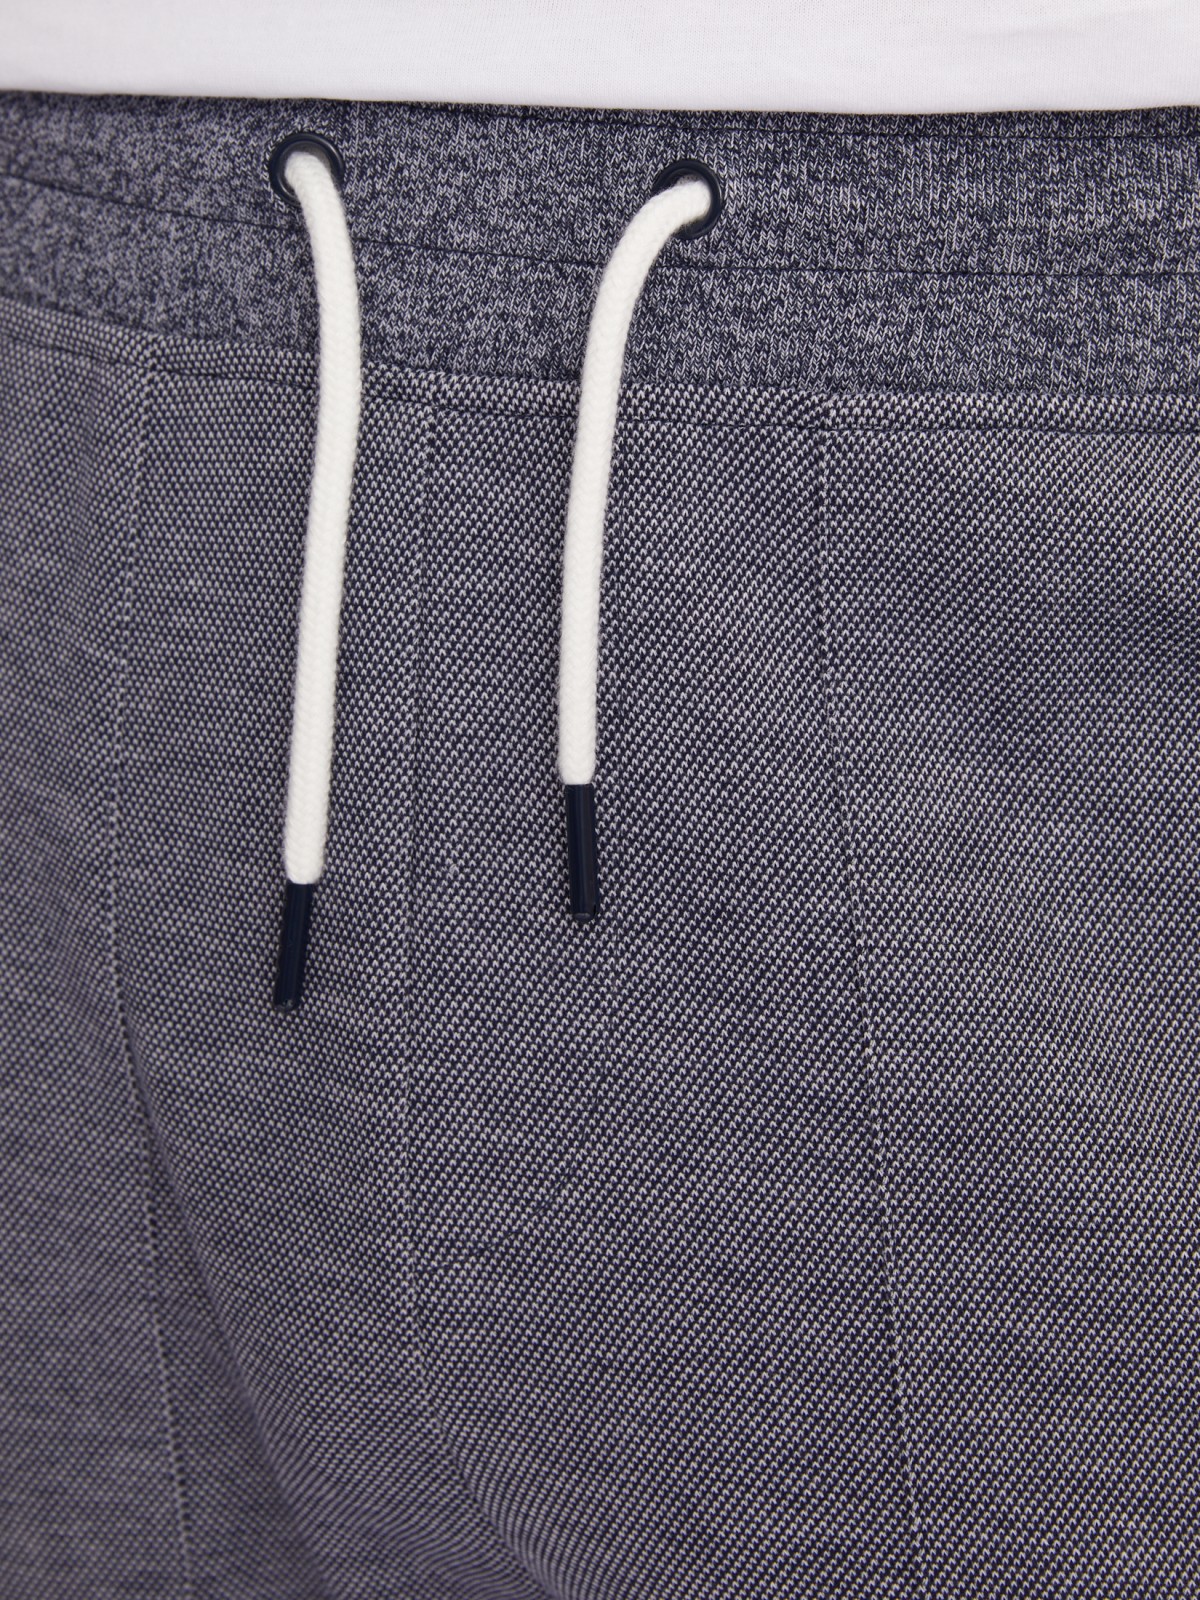 Трикотажные брюки-джоггеры в спортивном стиле zolla 213317604053, цвет светло-голубой, размер S - фото 5